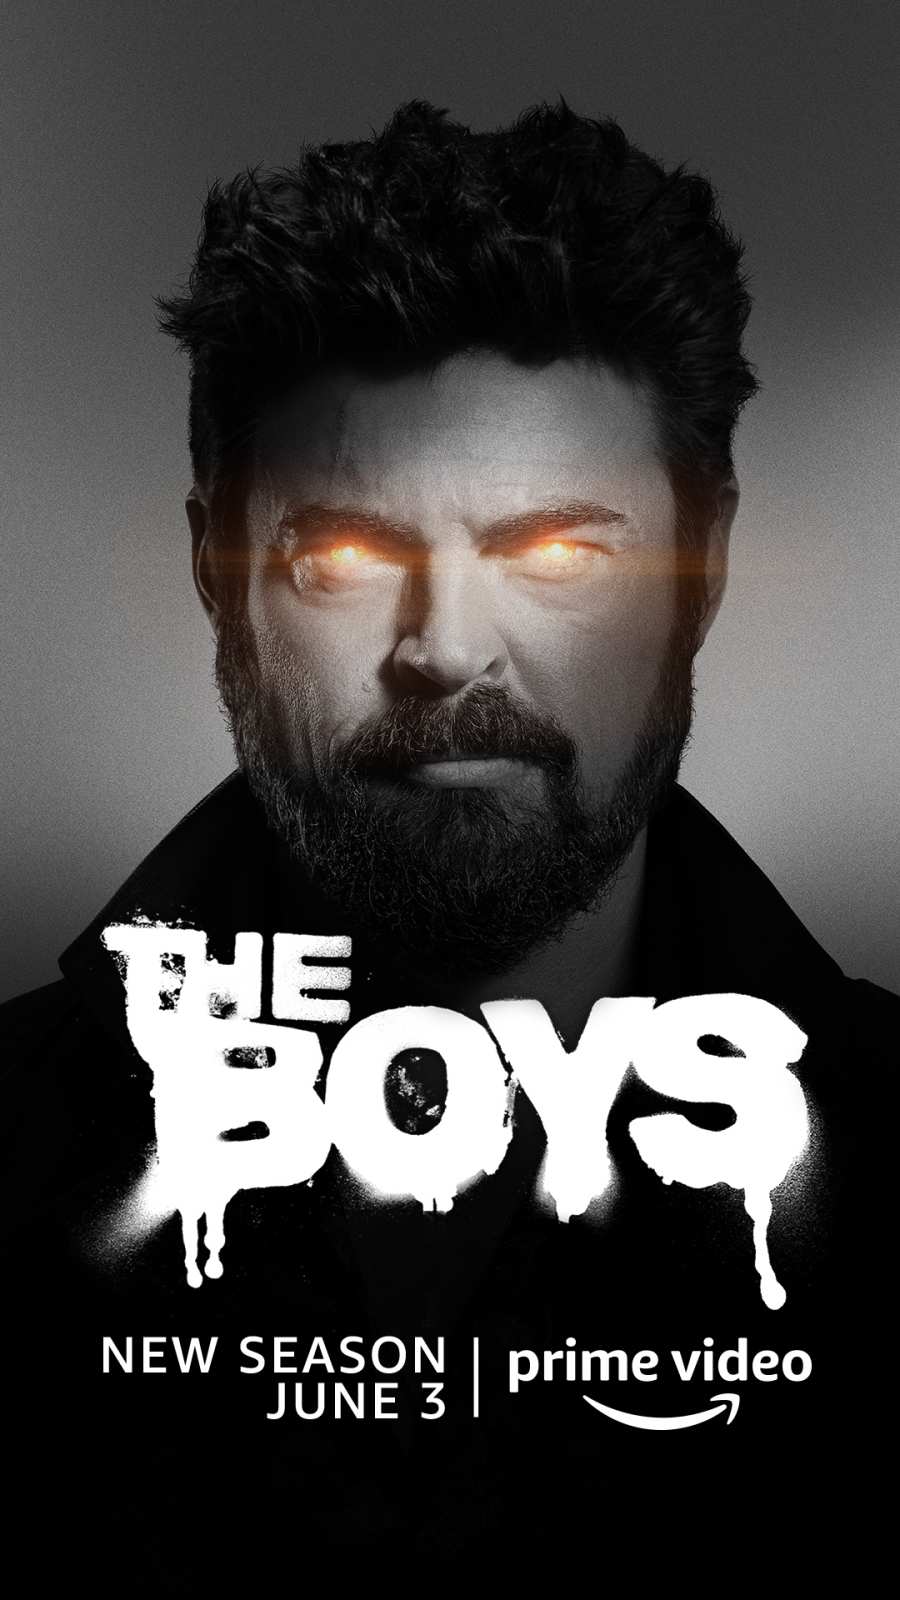 When Is 'The Boys' Season 3 Release Date?